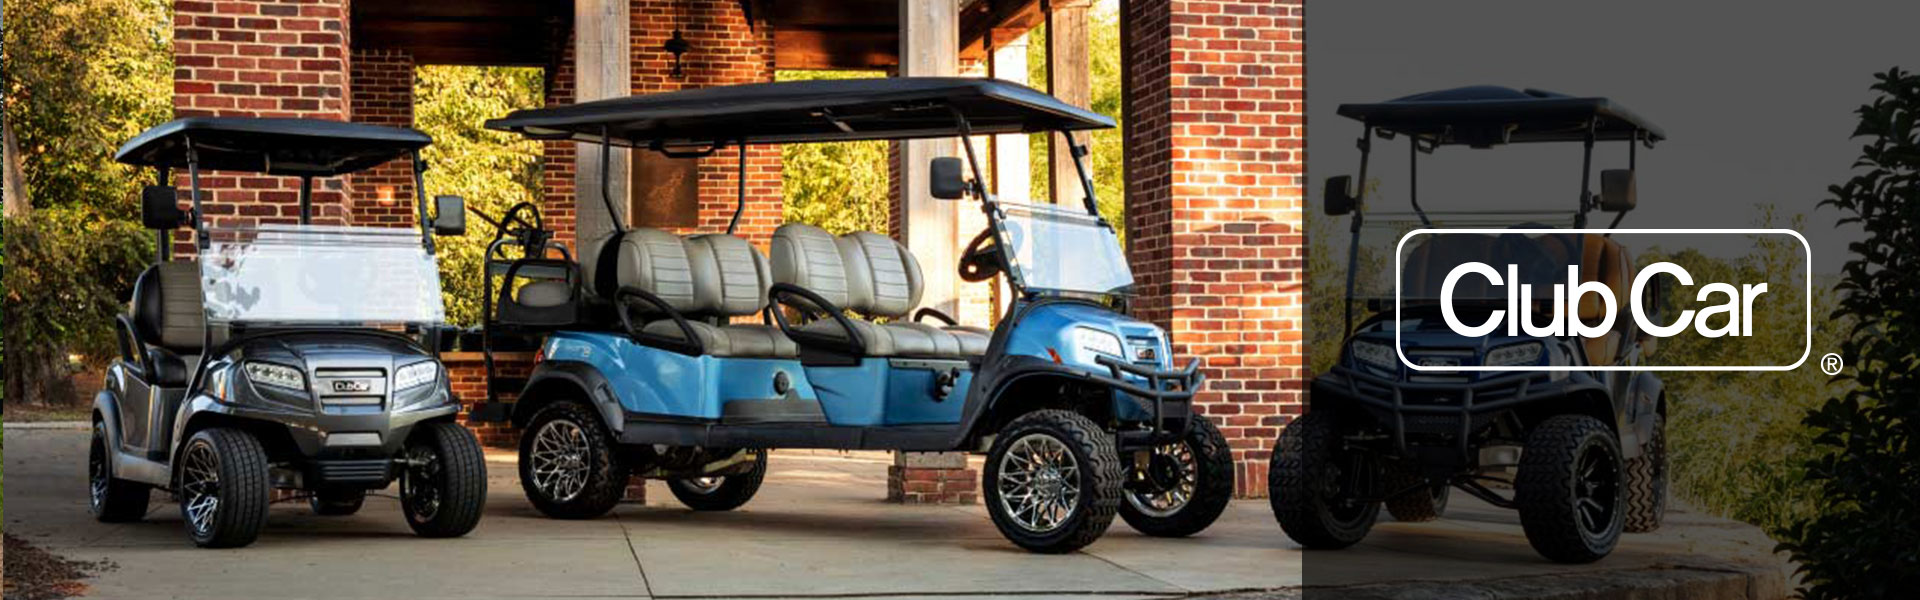 Club Car Golf Carts for sale